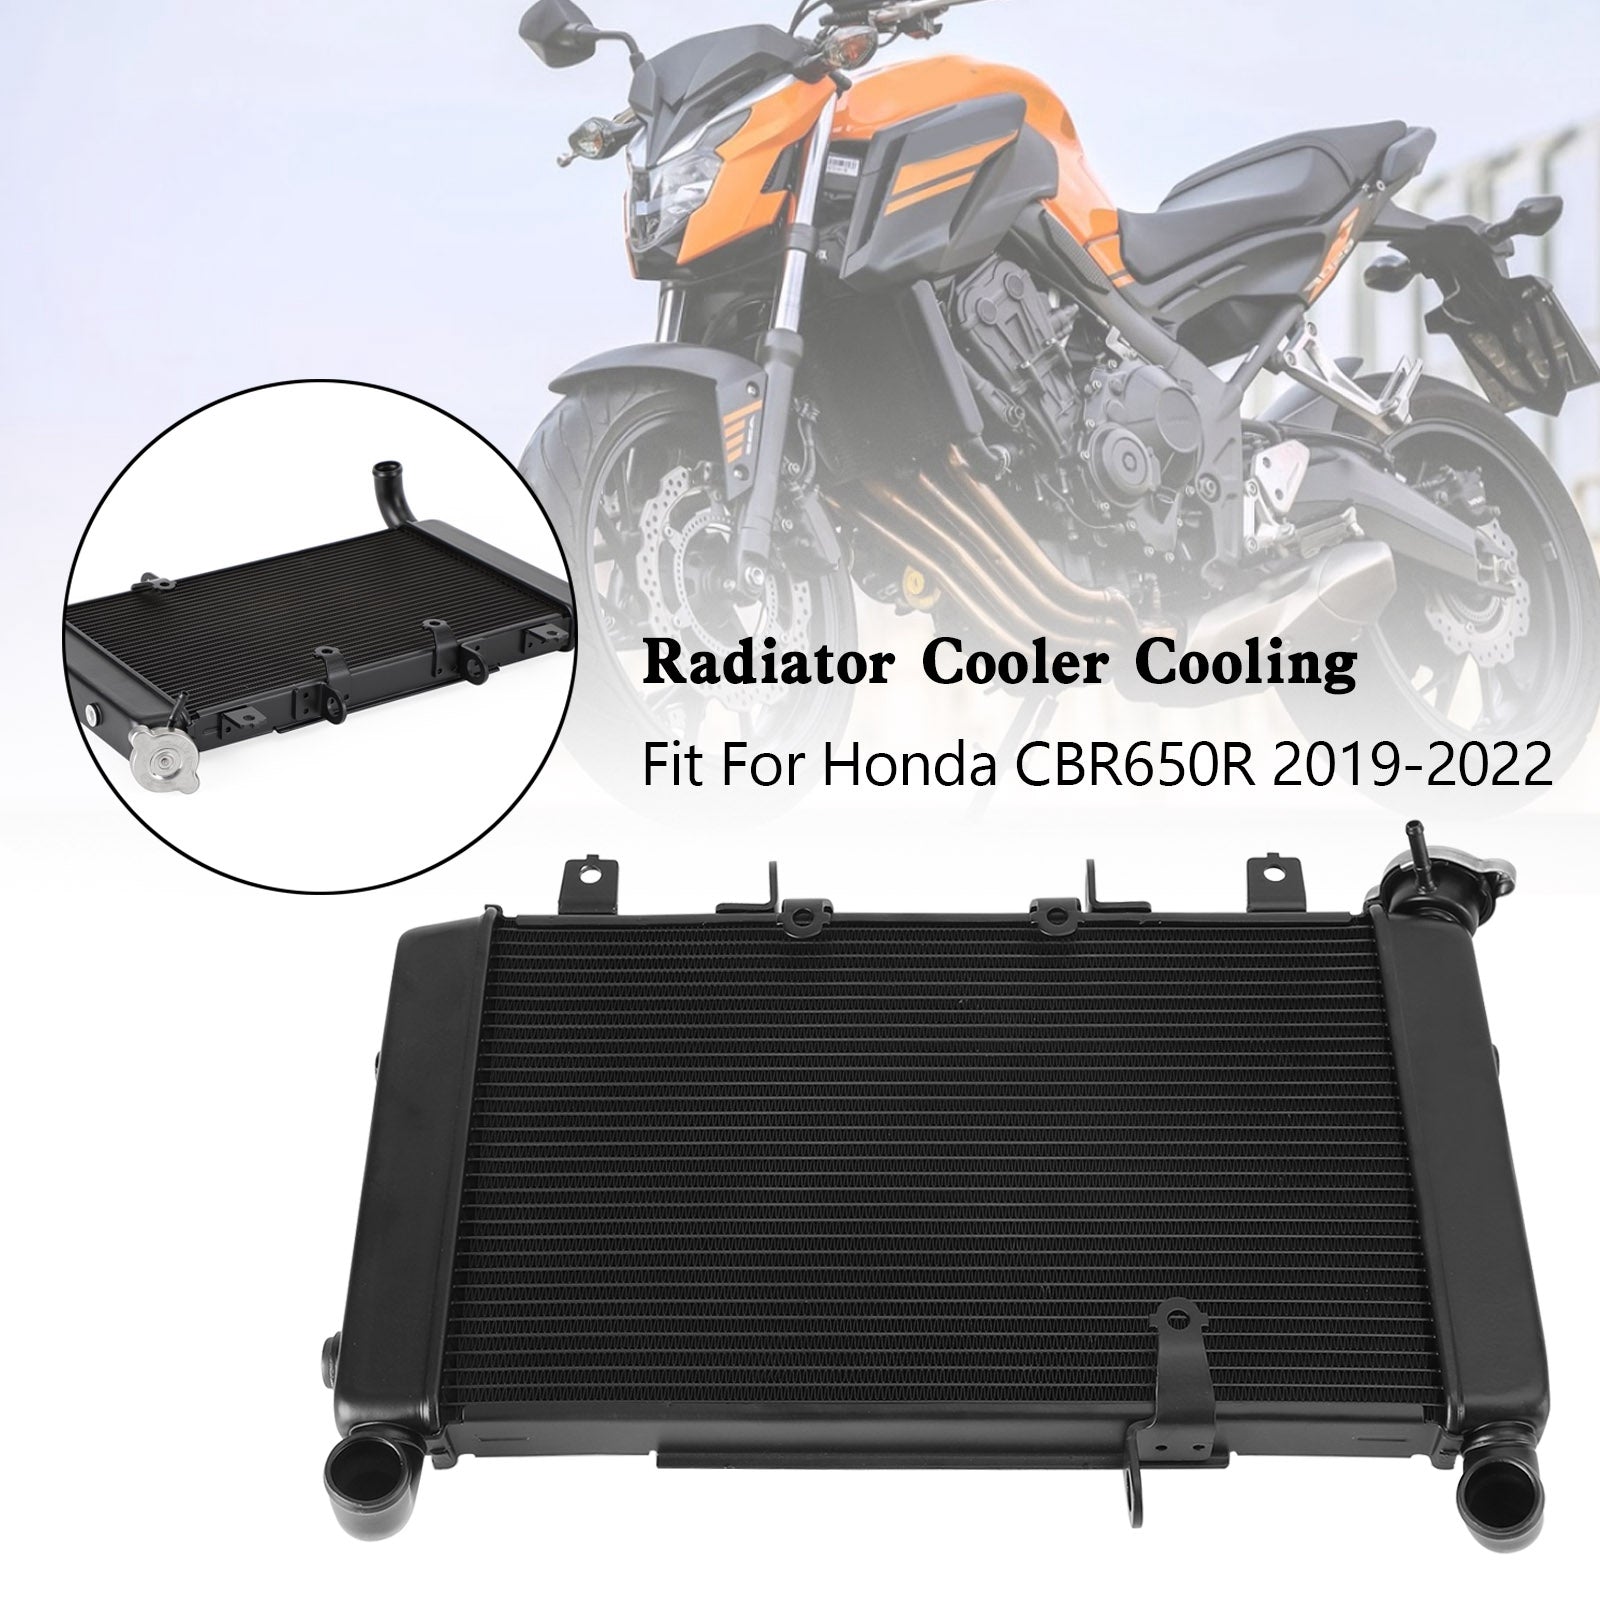 Aluminium Engine Radiator Cooler Cooling Fit For Honda CBR650R 2019-2022